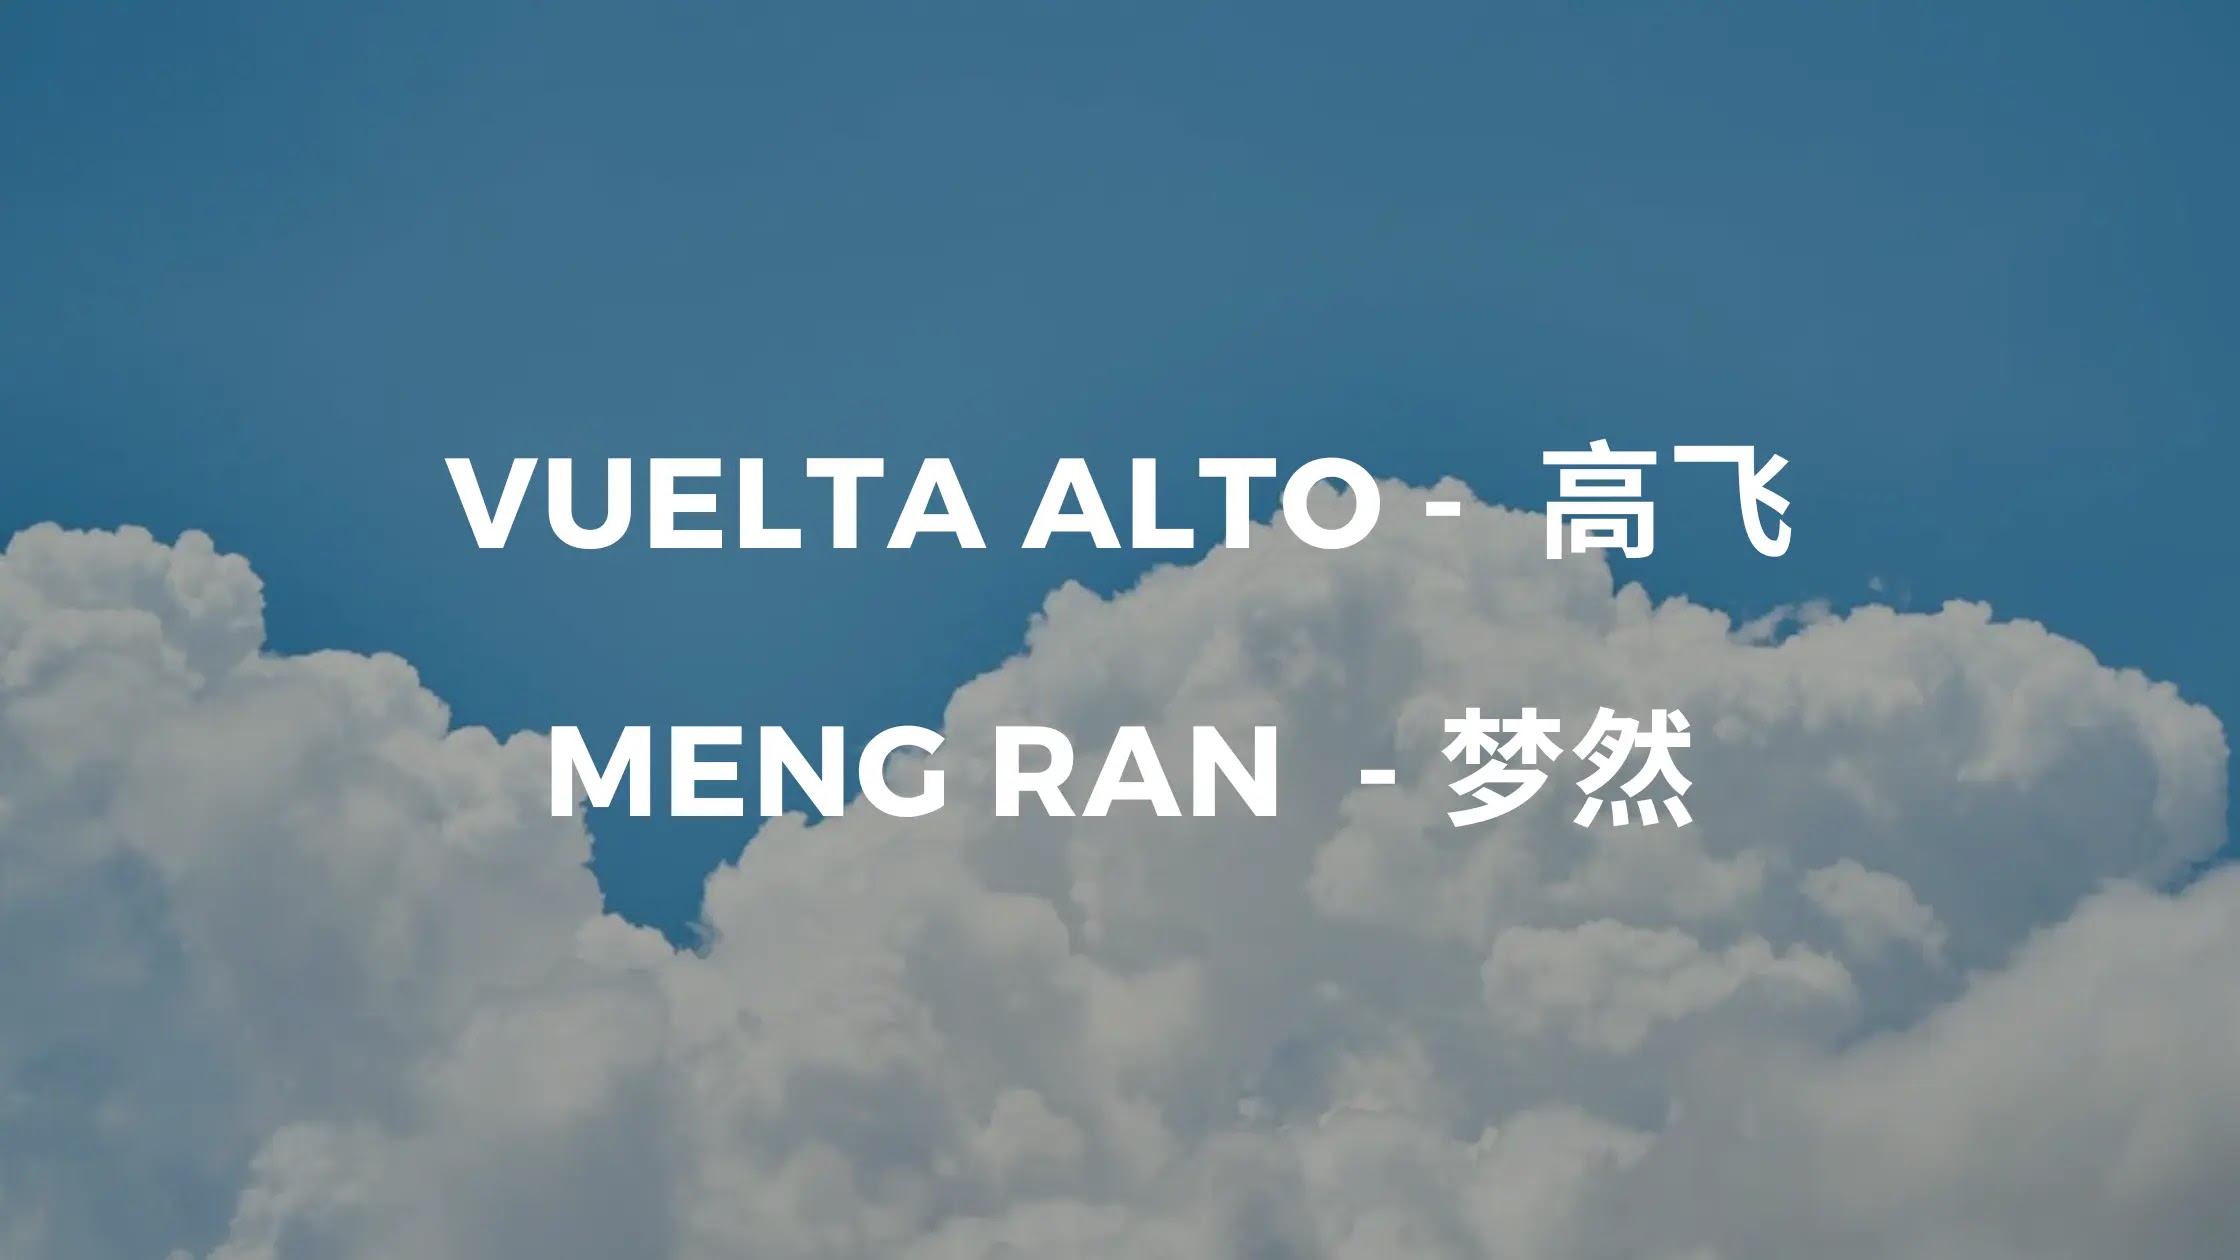 Aprende cantando chino: Meng Ran - Vuela alto [ES/CH/Pinyin]